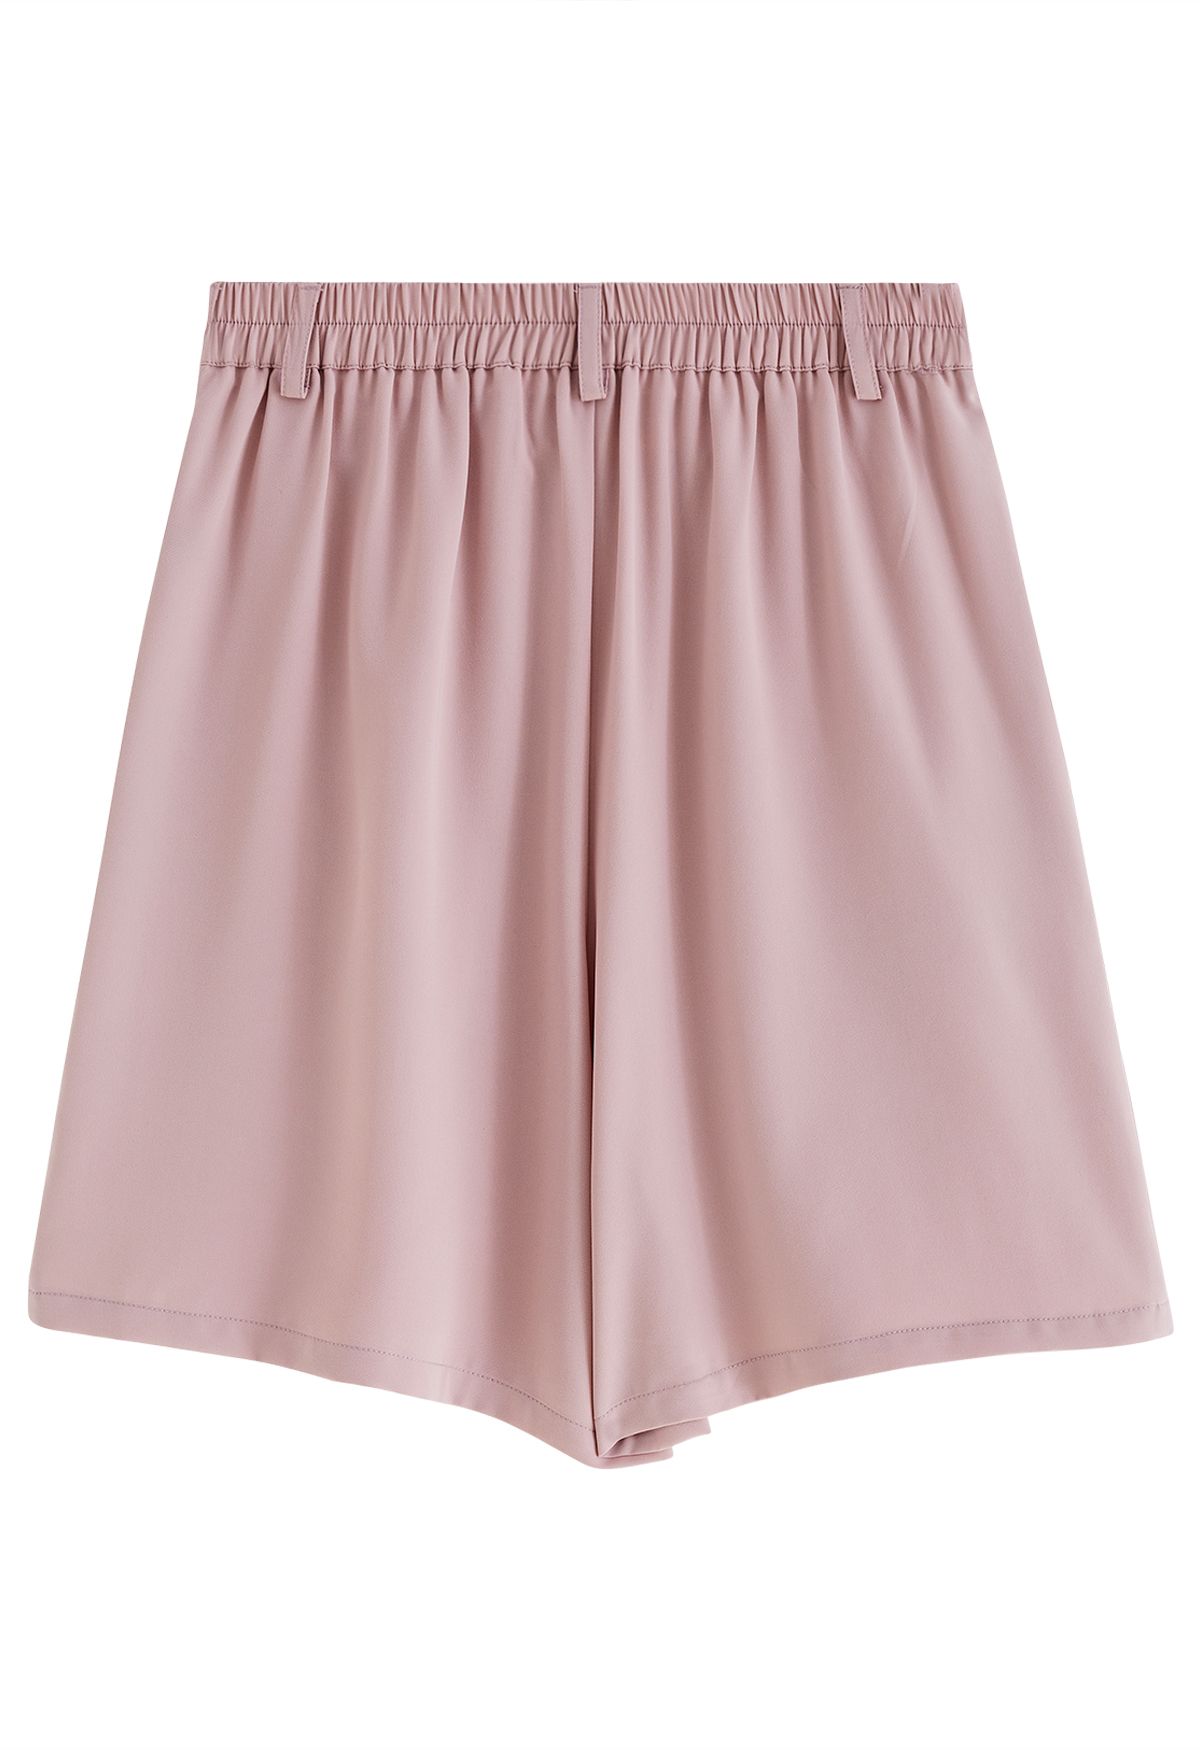 Shorts con bolsillos laterales y detalles plisados en rosa